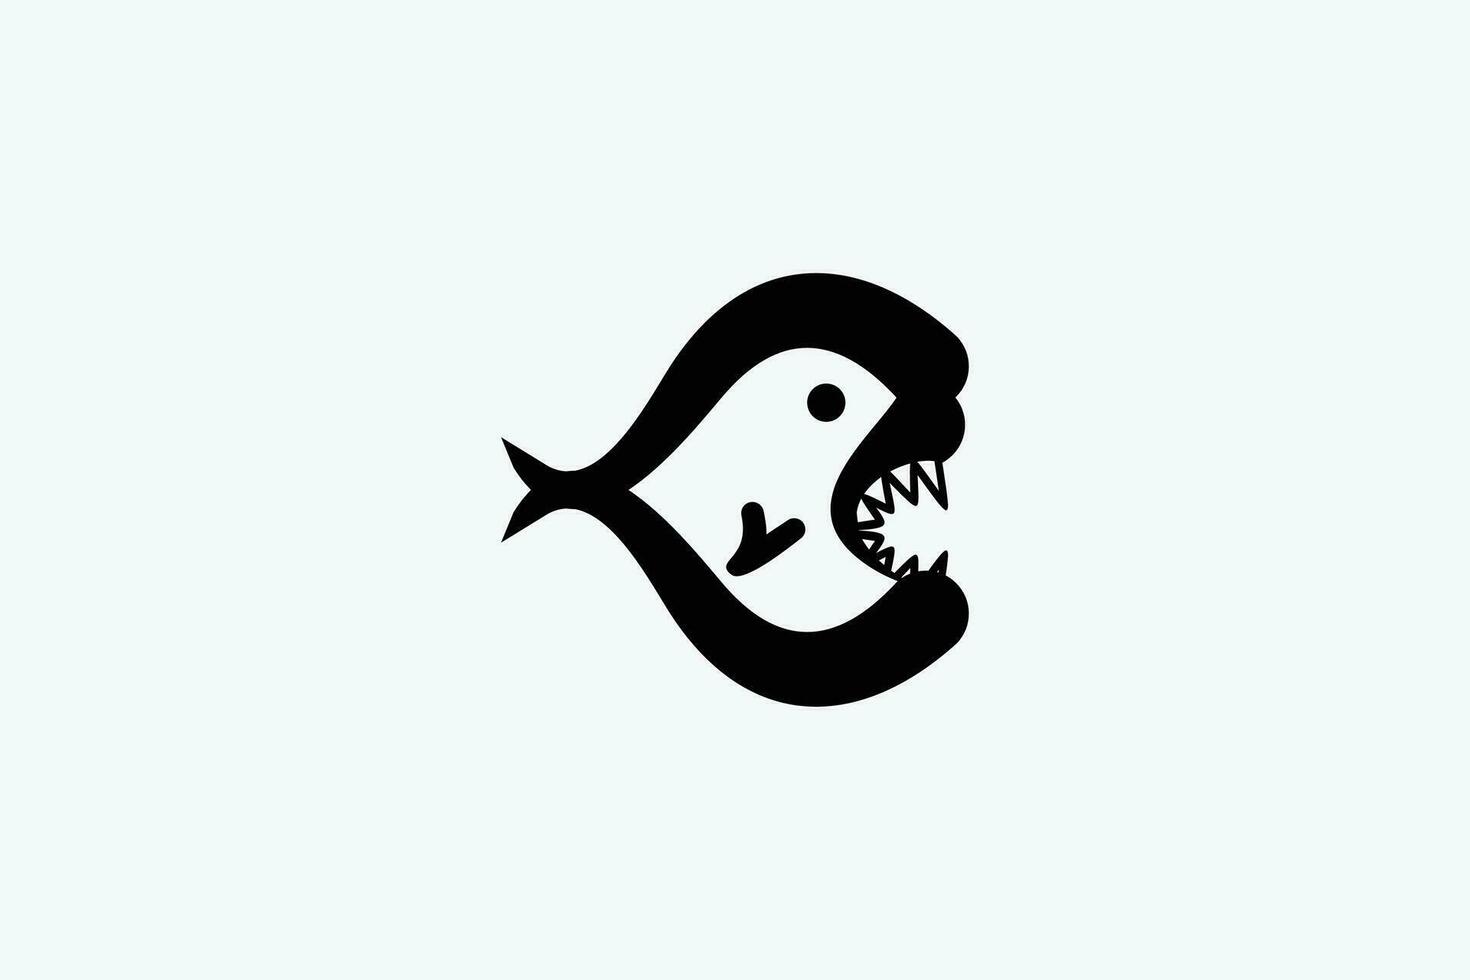 une noir et blanc logo de une poisson avec ses bouche ouvert vecteur